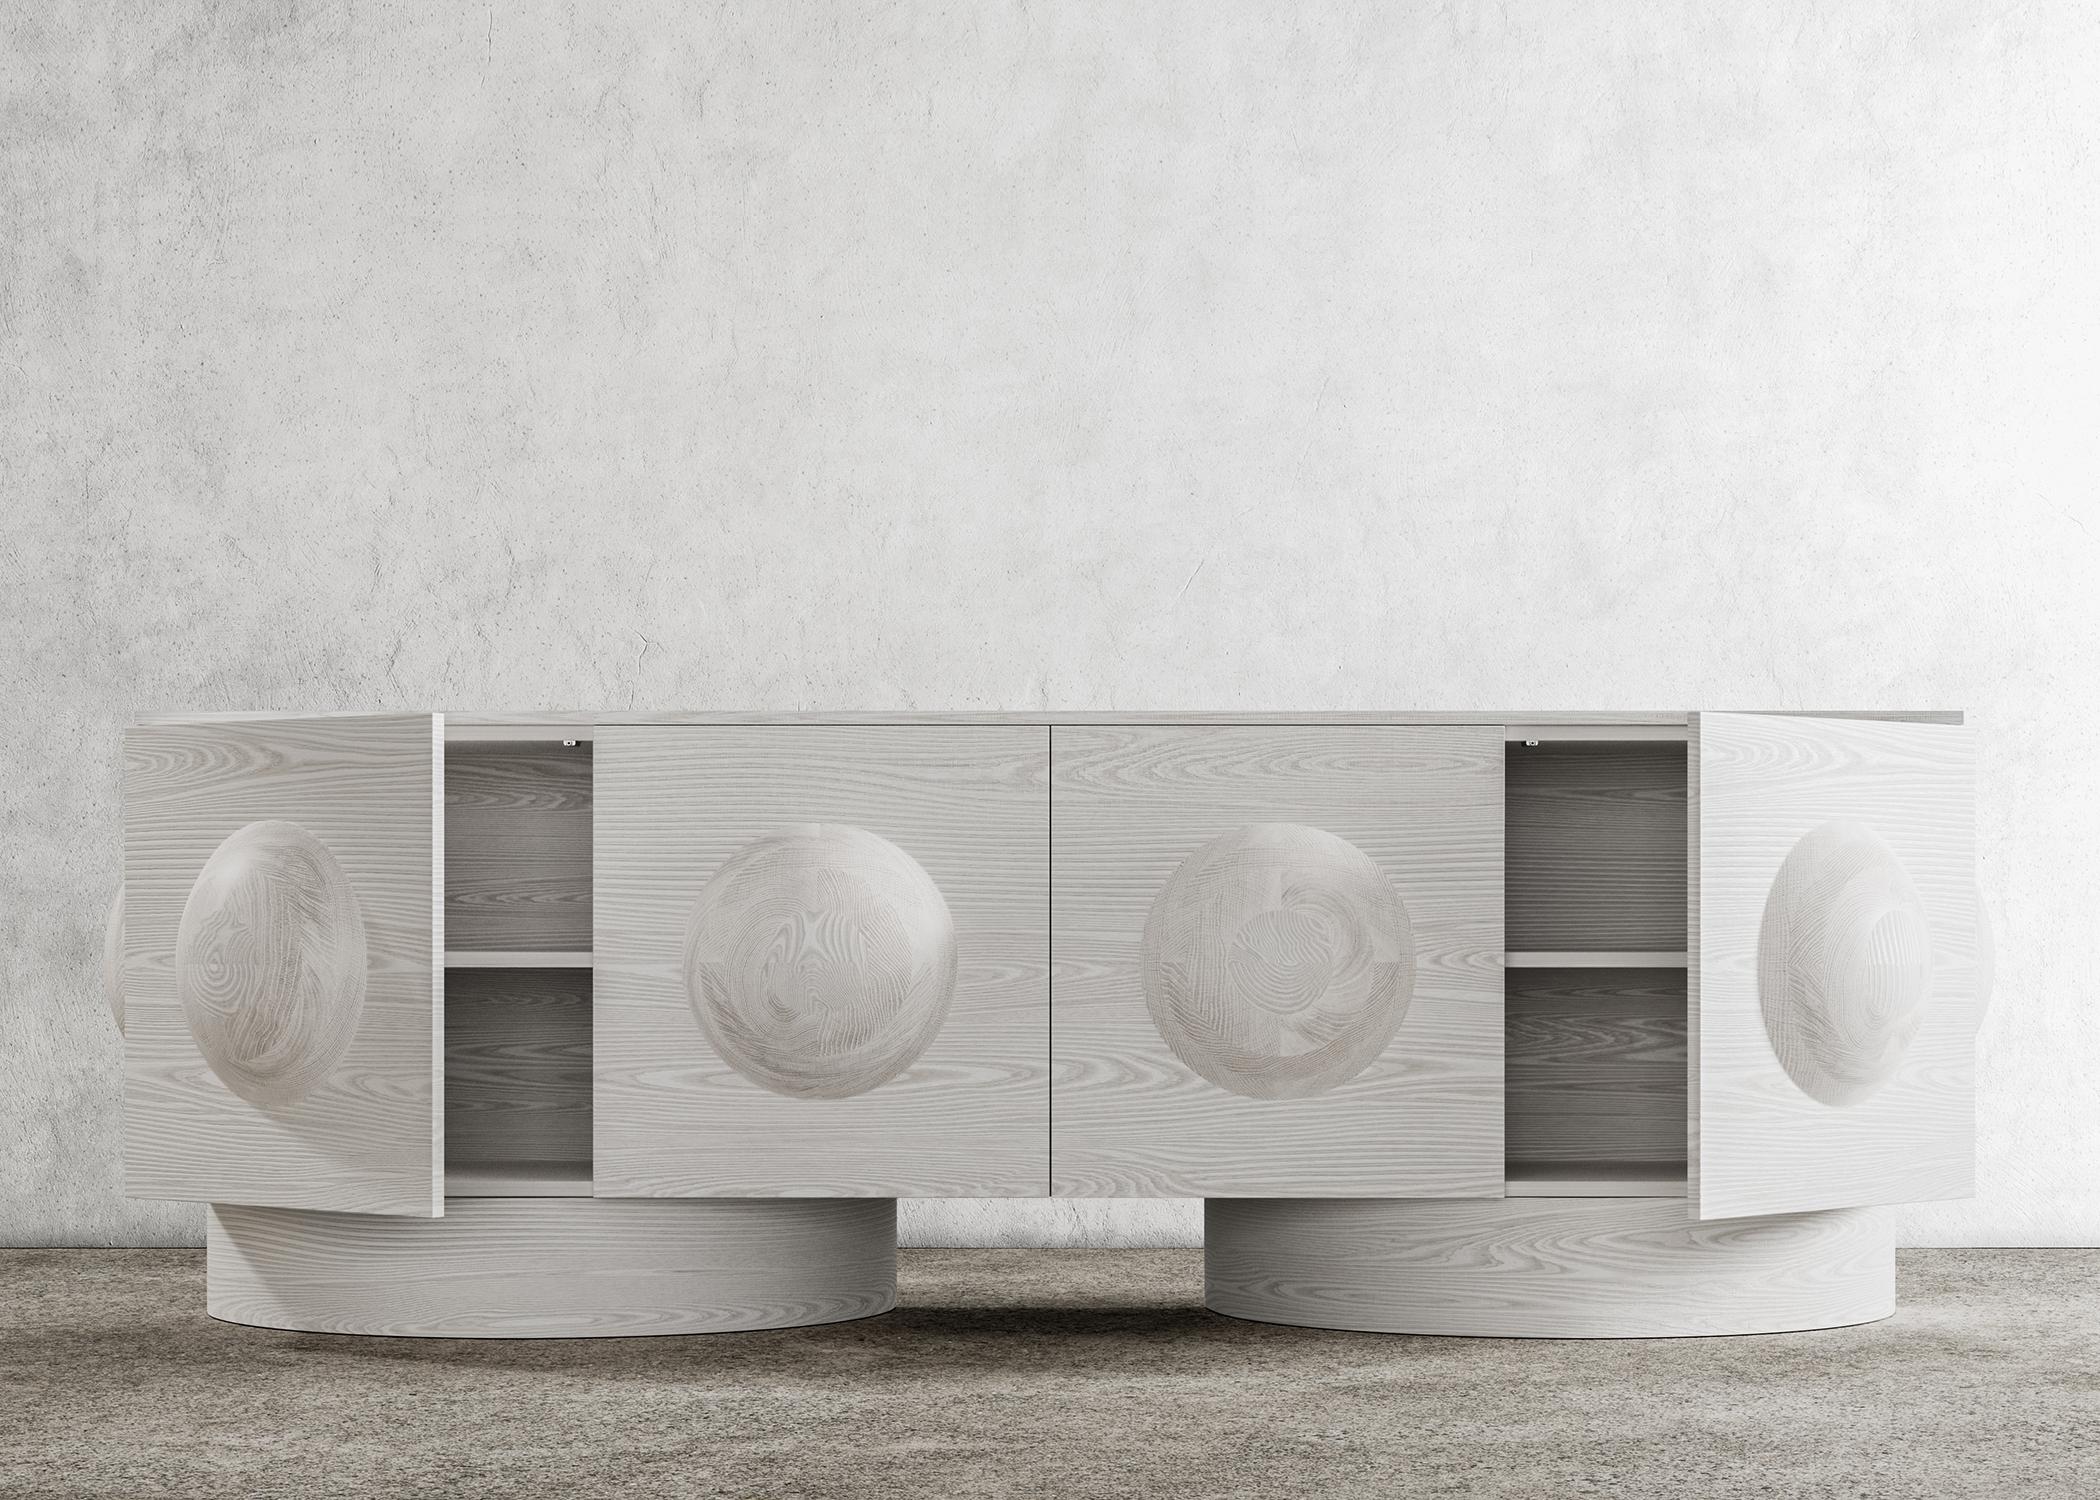 DOT CREDENZA – Moderner Gehäuse und Sockel aus gebleichter weißer Eiche

Die Dot Credenza ist ein zeitgenössisches Möbelstück mit einem einzigartigen Designelement - einer skulpturalen Holzkugel - und Holzsockeln, die ihm eine architektonische Note